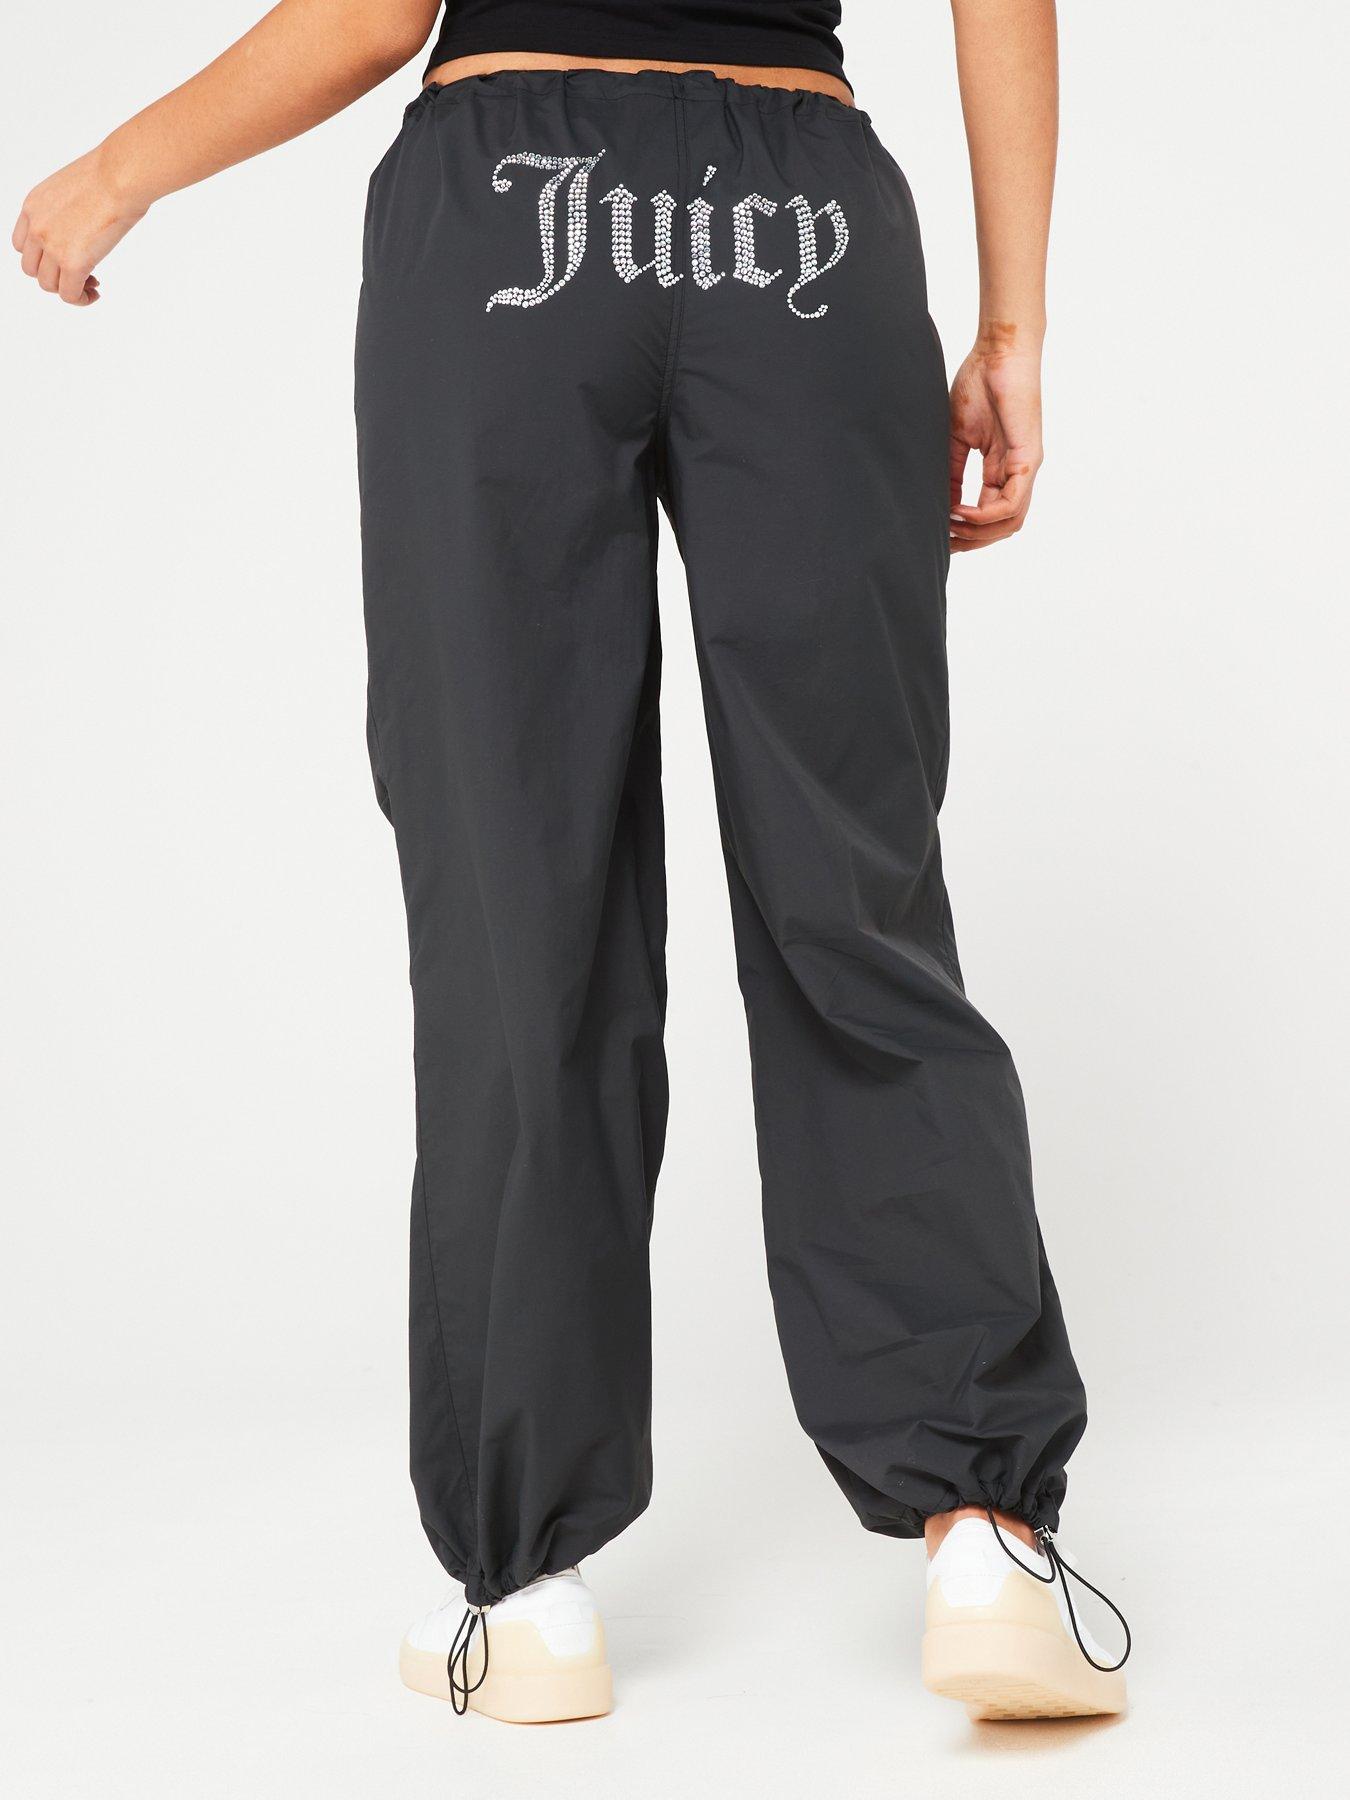 Buy Juicy Couture Girls Deep Band Juicy Leggings Black